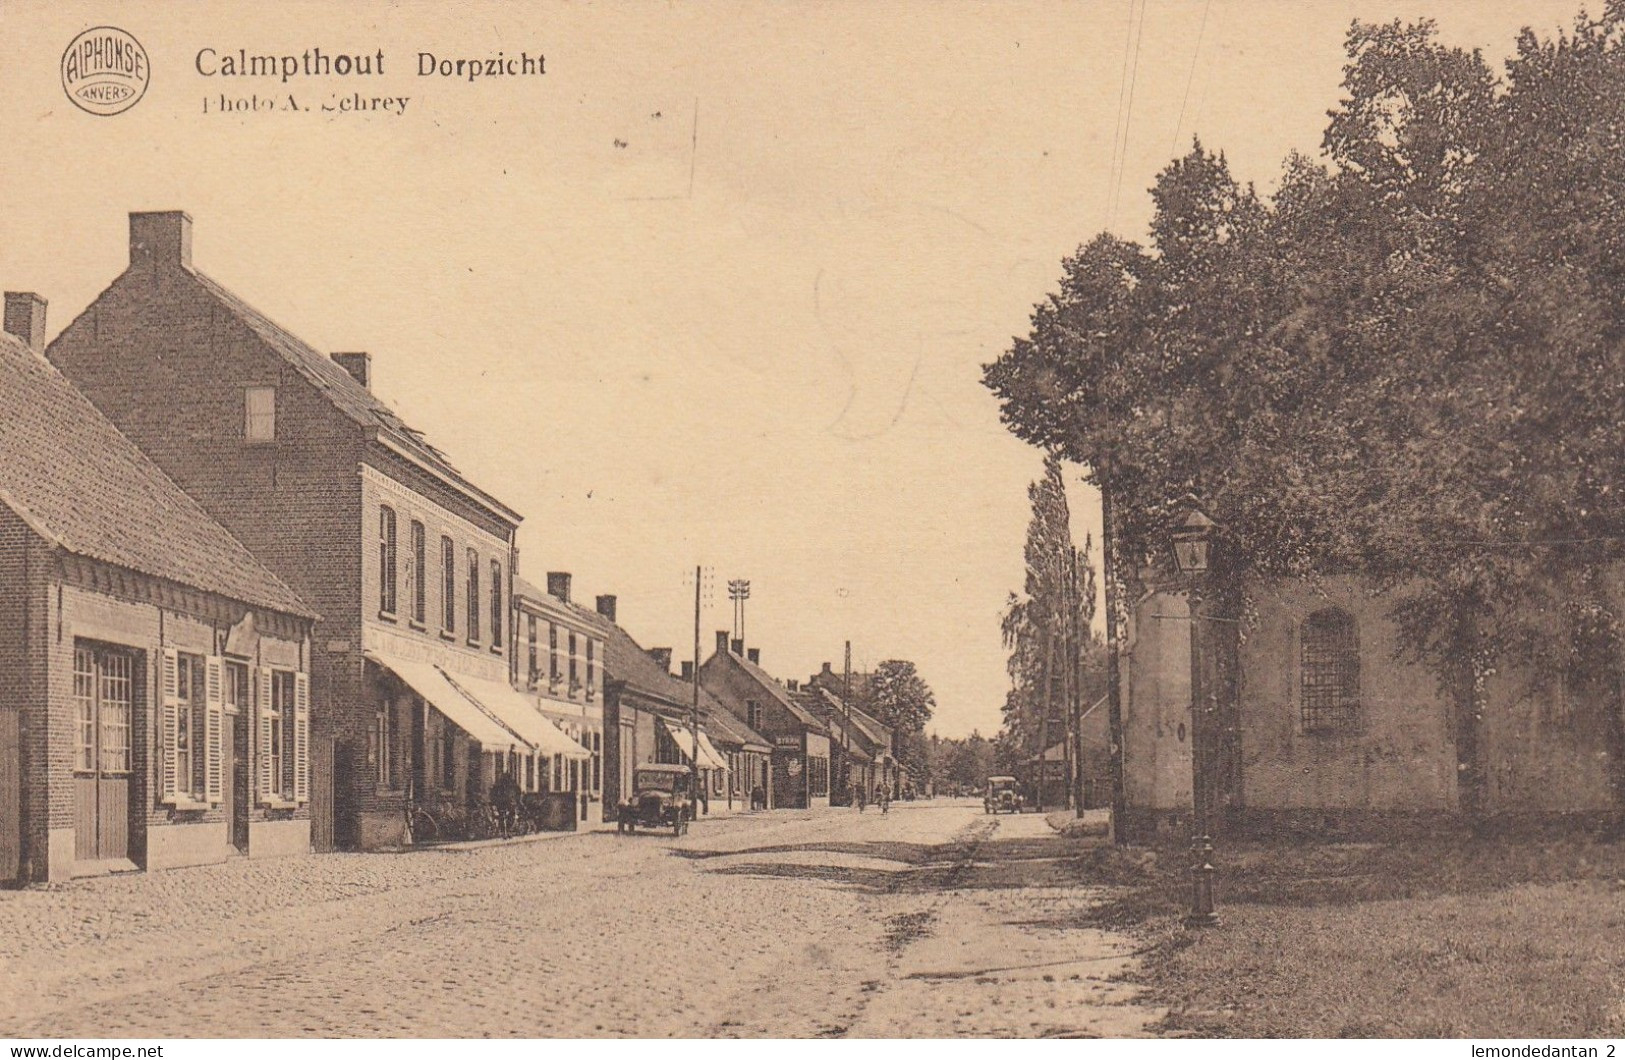 Kalmthout - Calmpthout - Dorpzicht - Kalmthout